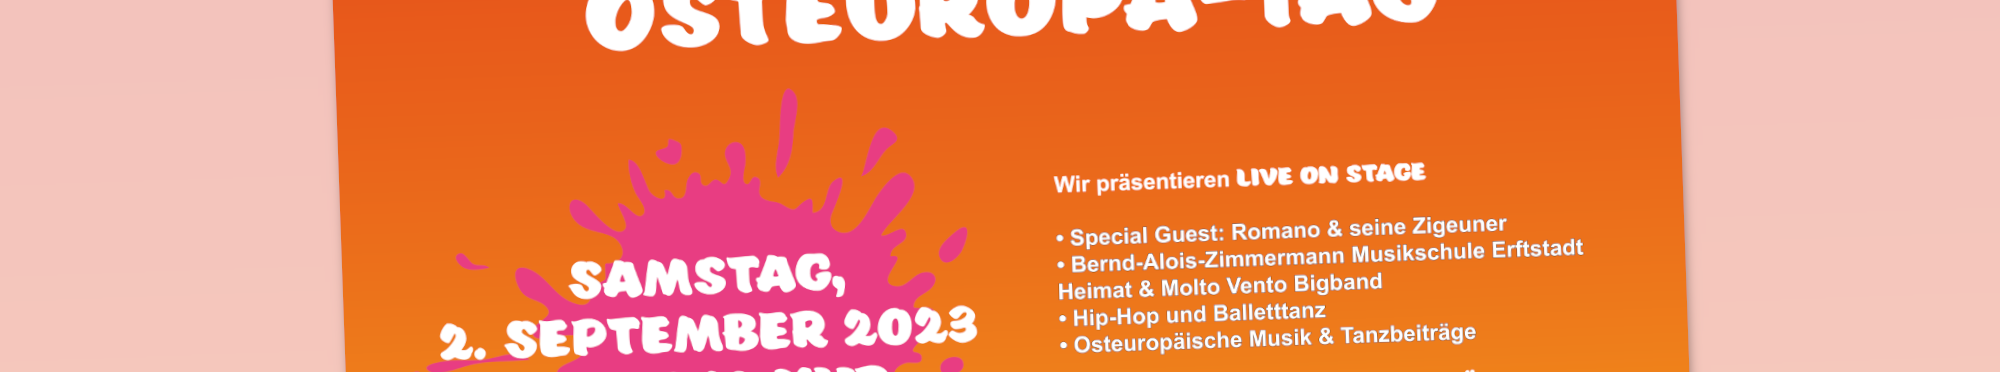 Plakat zum Osteuropa-Tag am 02. September 2023